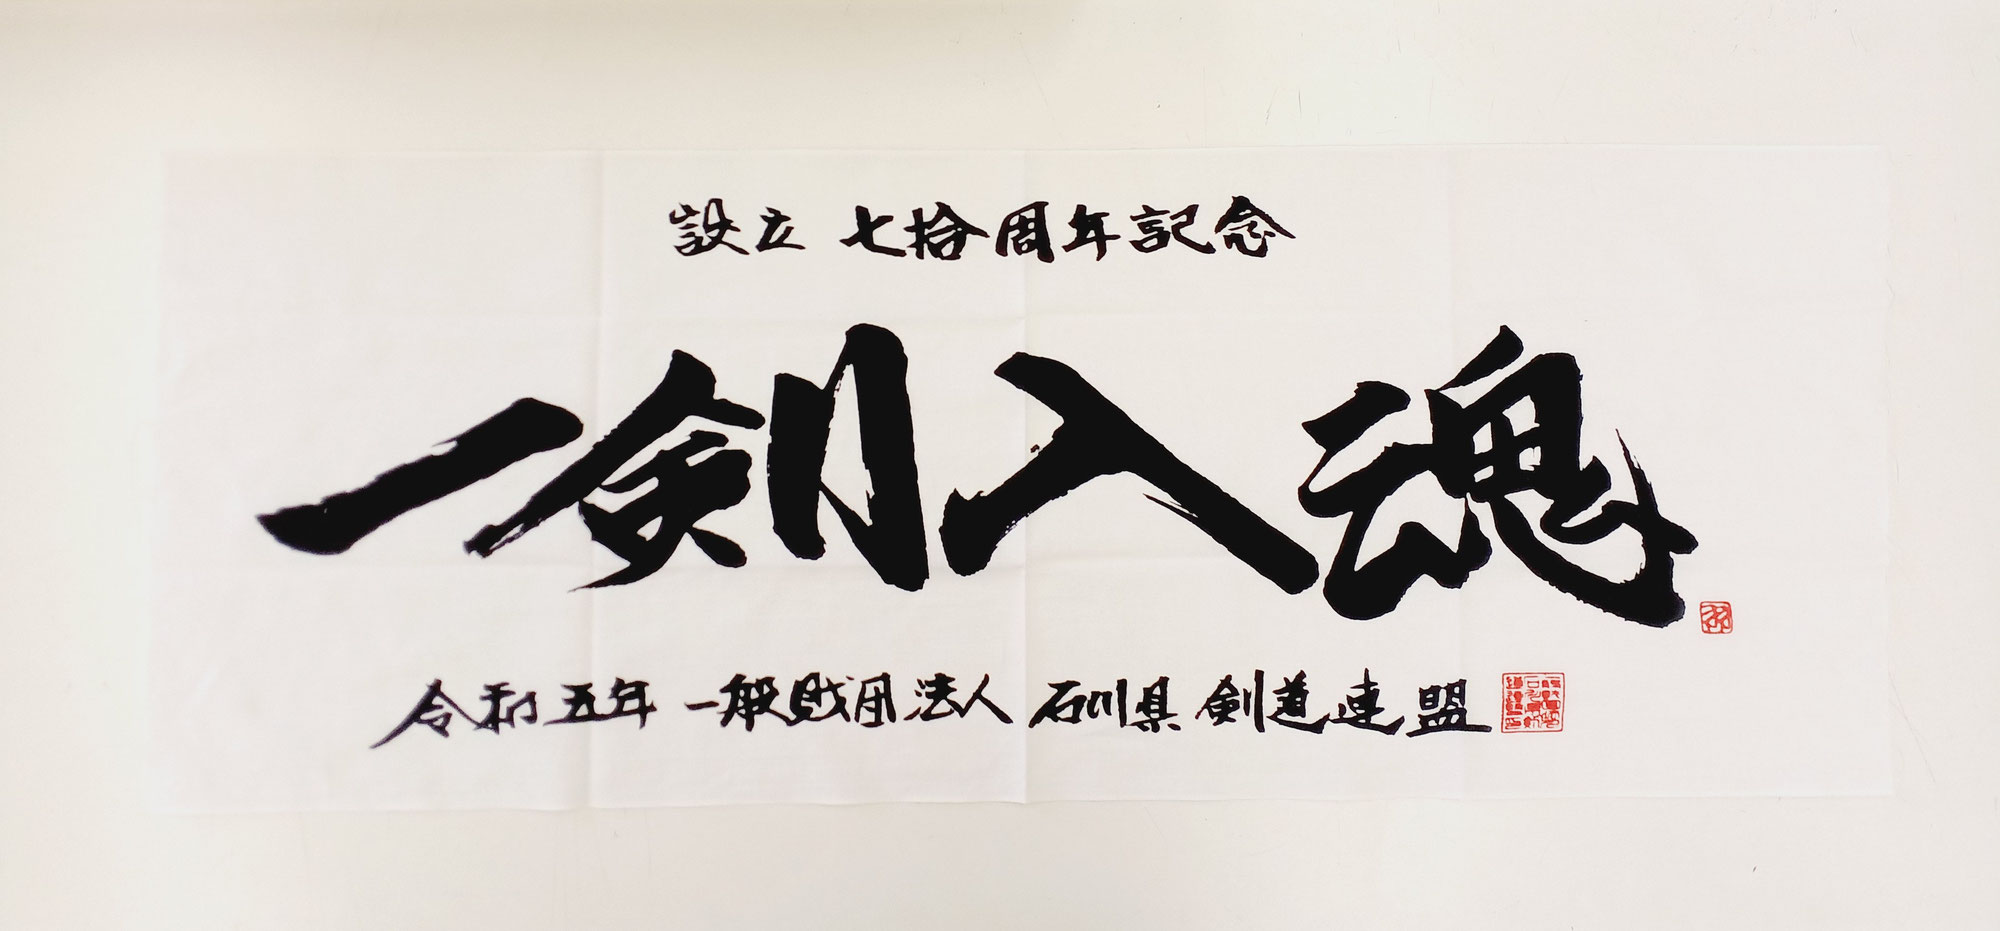 ■ 石川県剣道連盟様の70周年記念 日本手拭を作成